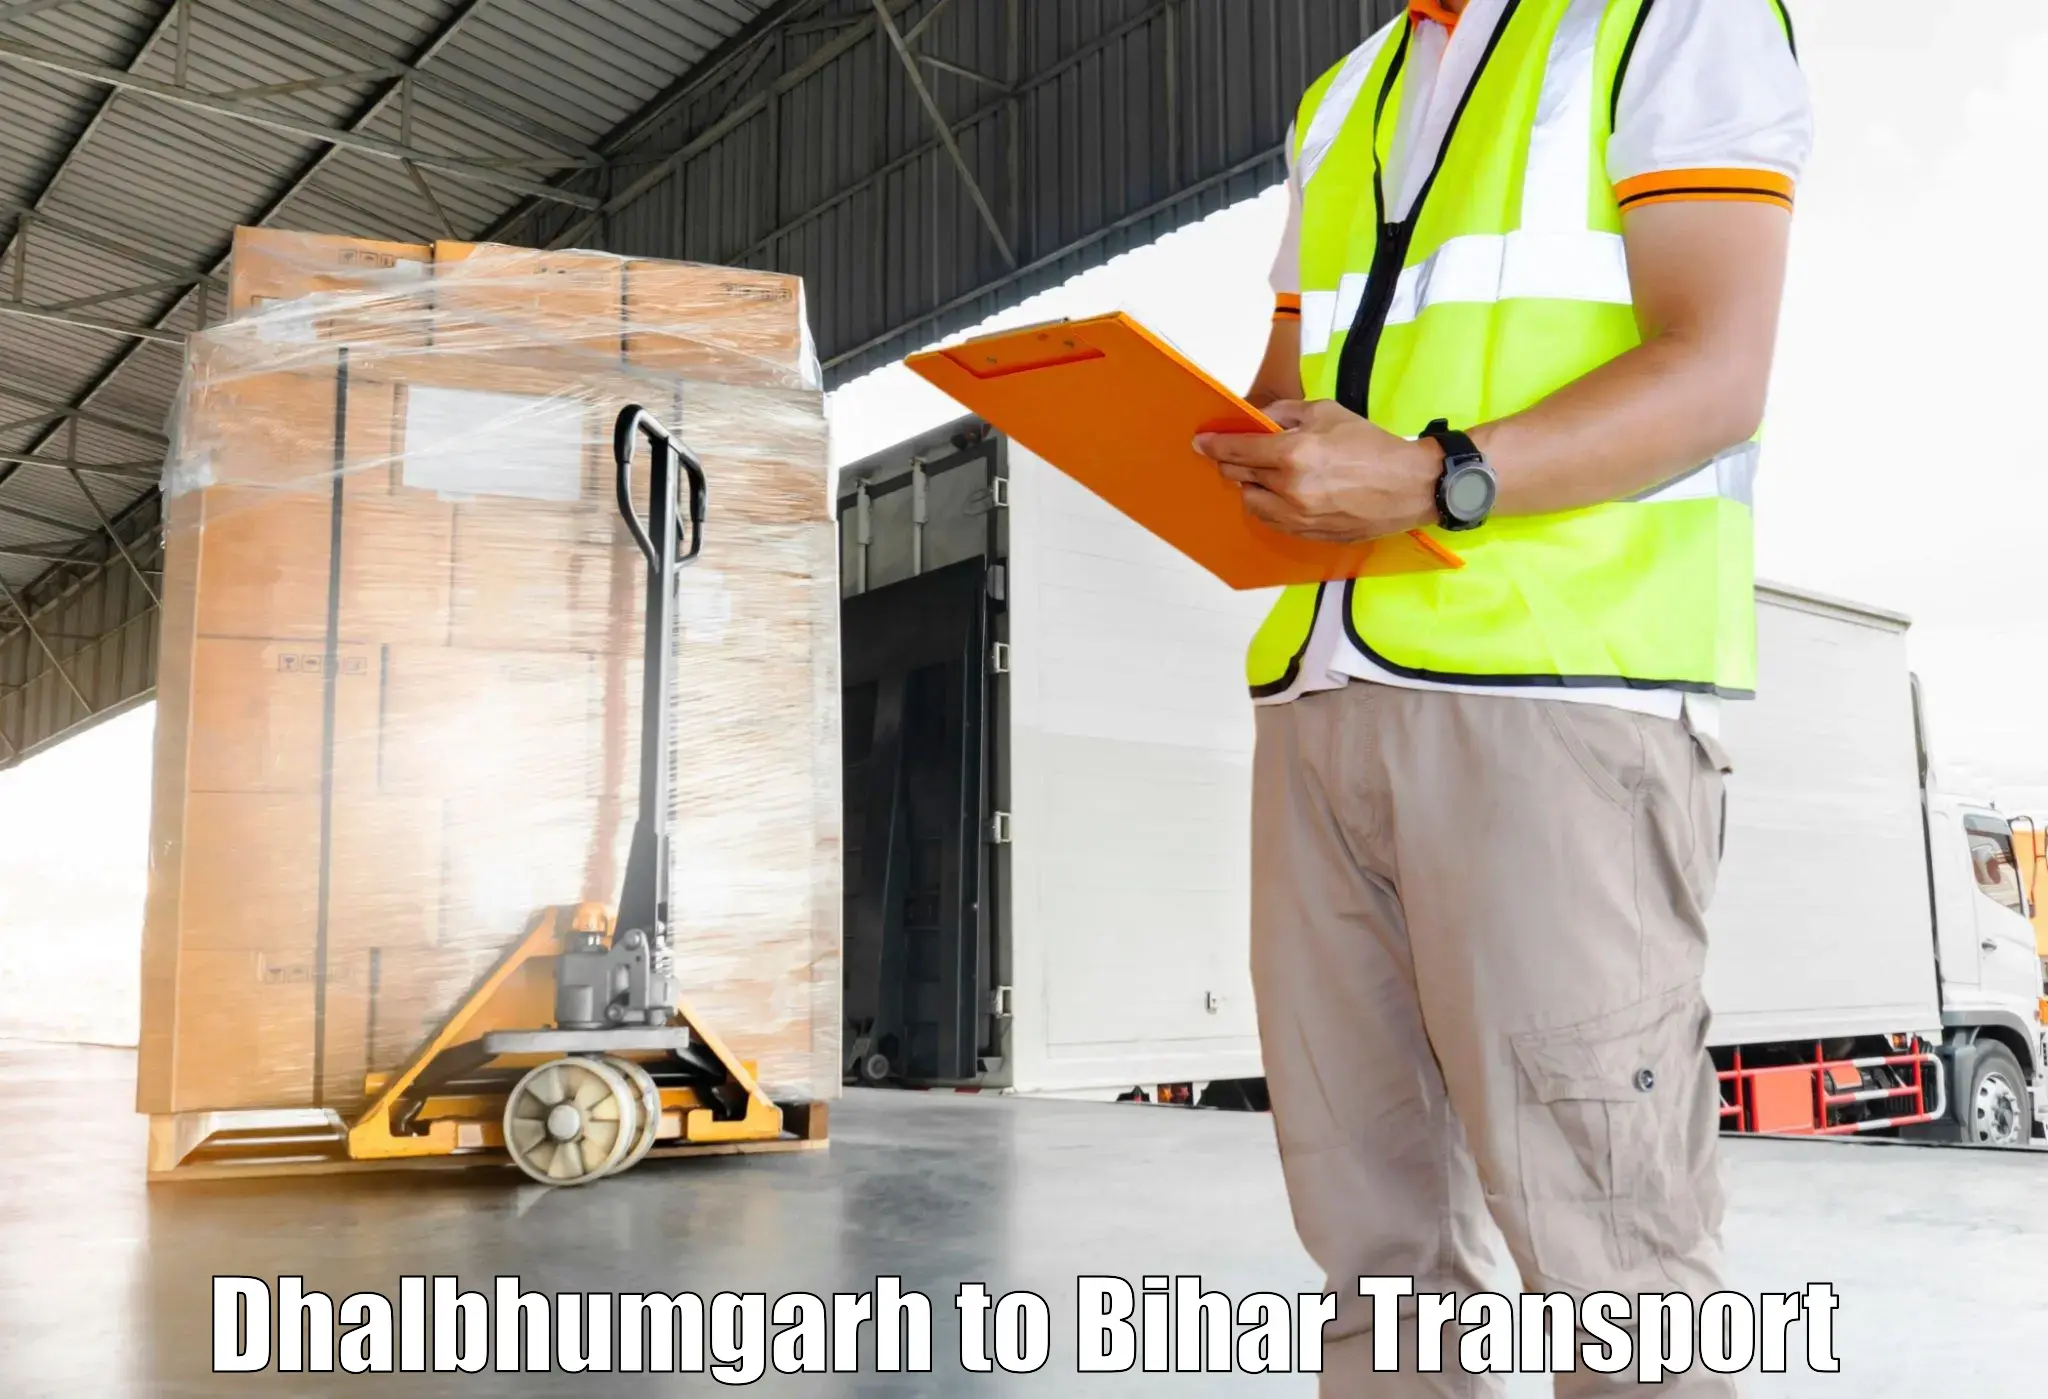 Cargo transport services Dhalbhumgarh to Mashrakh